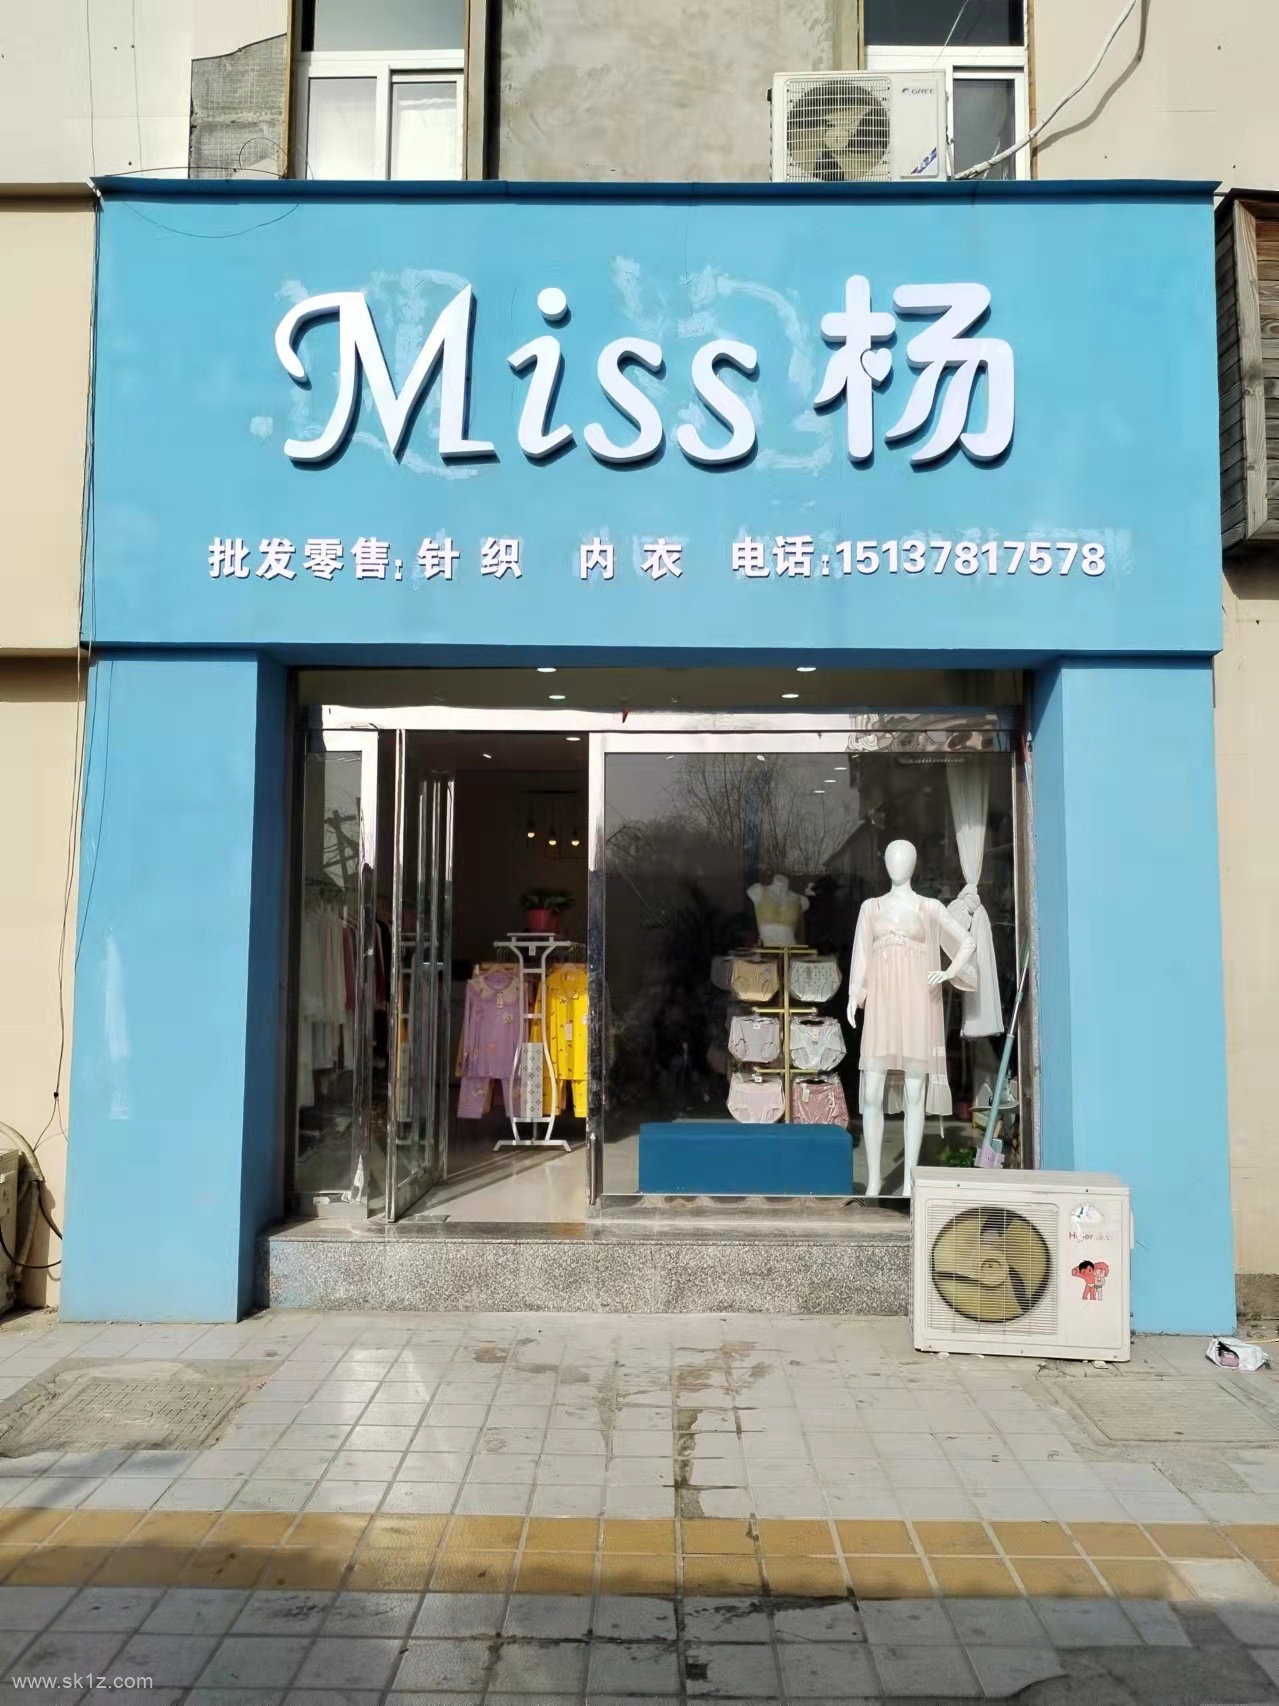 兰考县方达商贸有限公司【Miss杨】批发零售、针织内衣